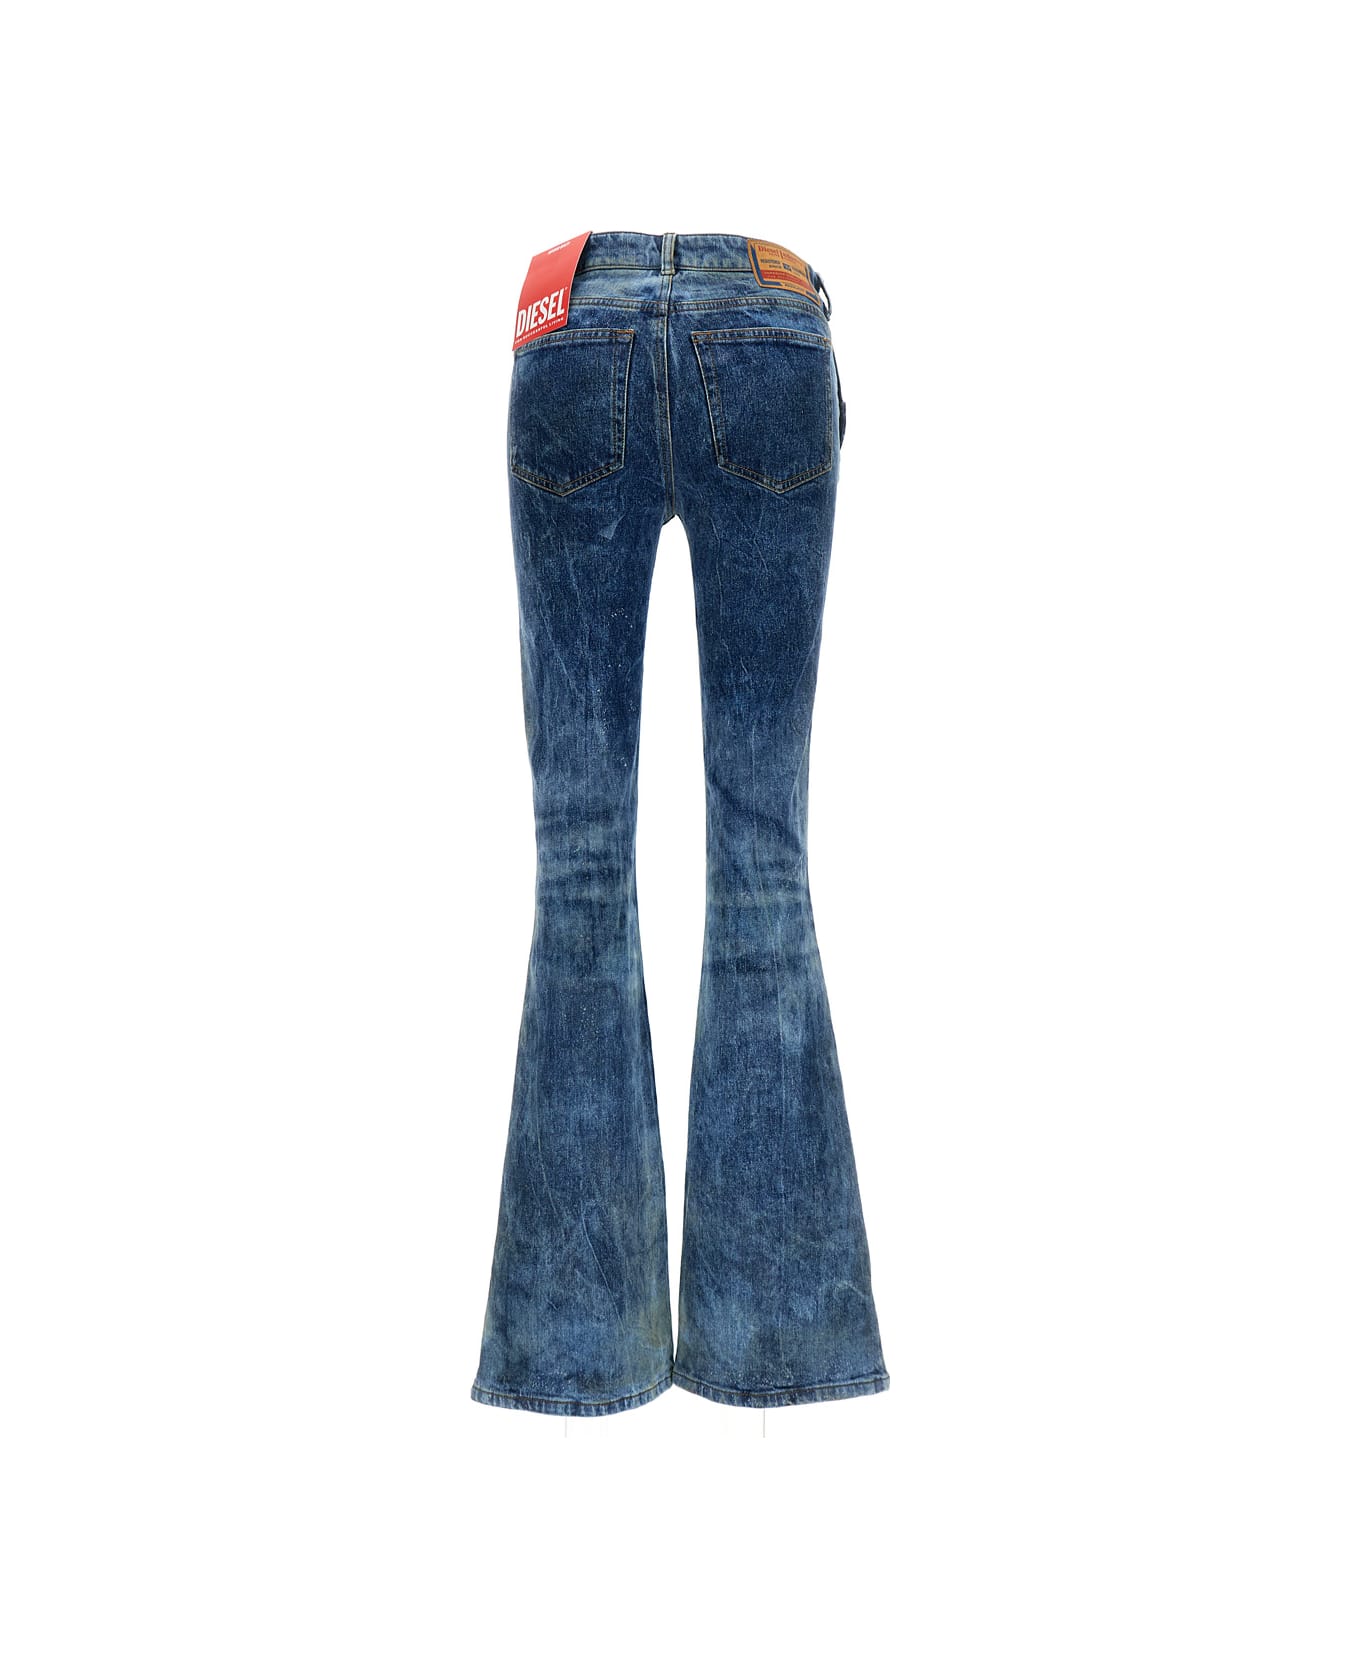 Diesel Blue Low Waist Flare Jeans In Cotton Blend Woman - Blu デニム